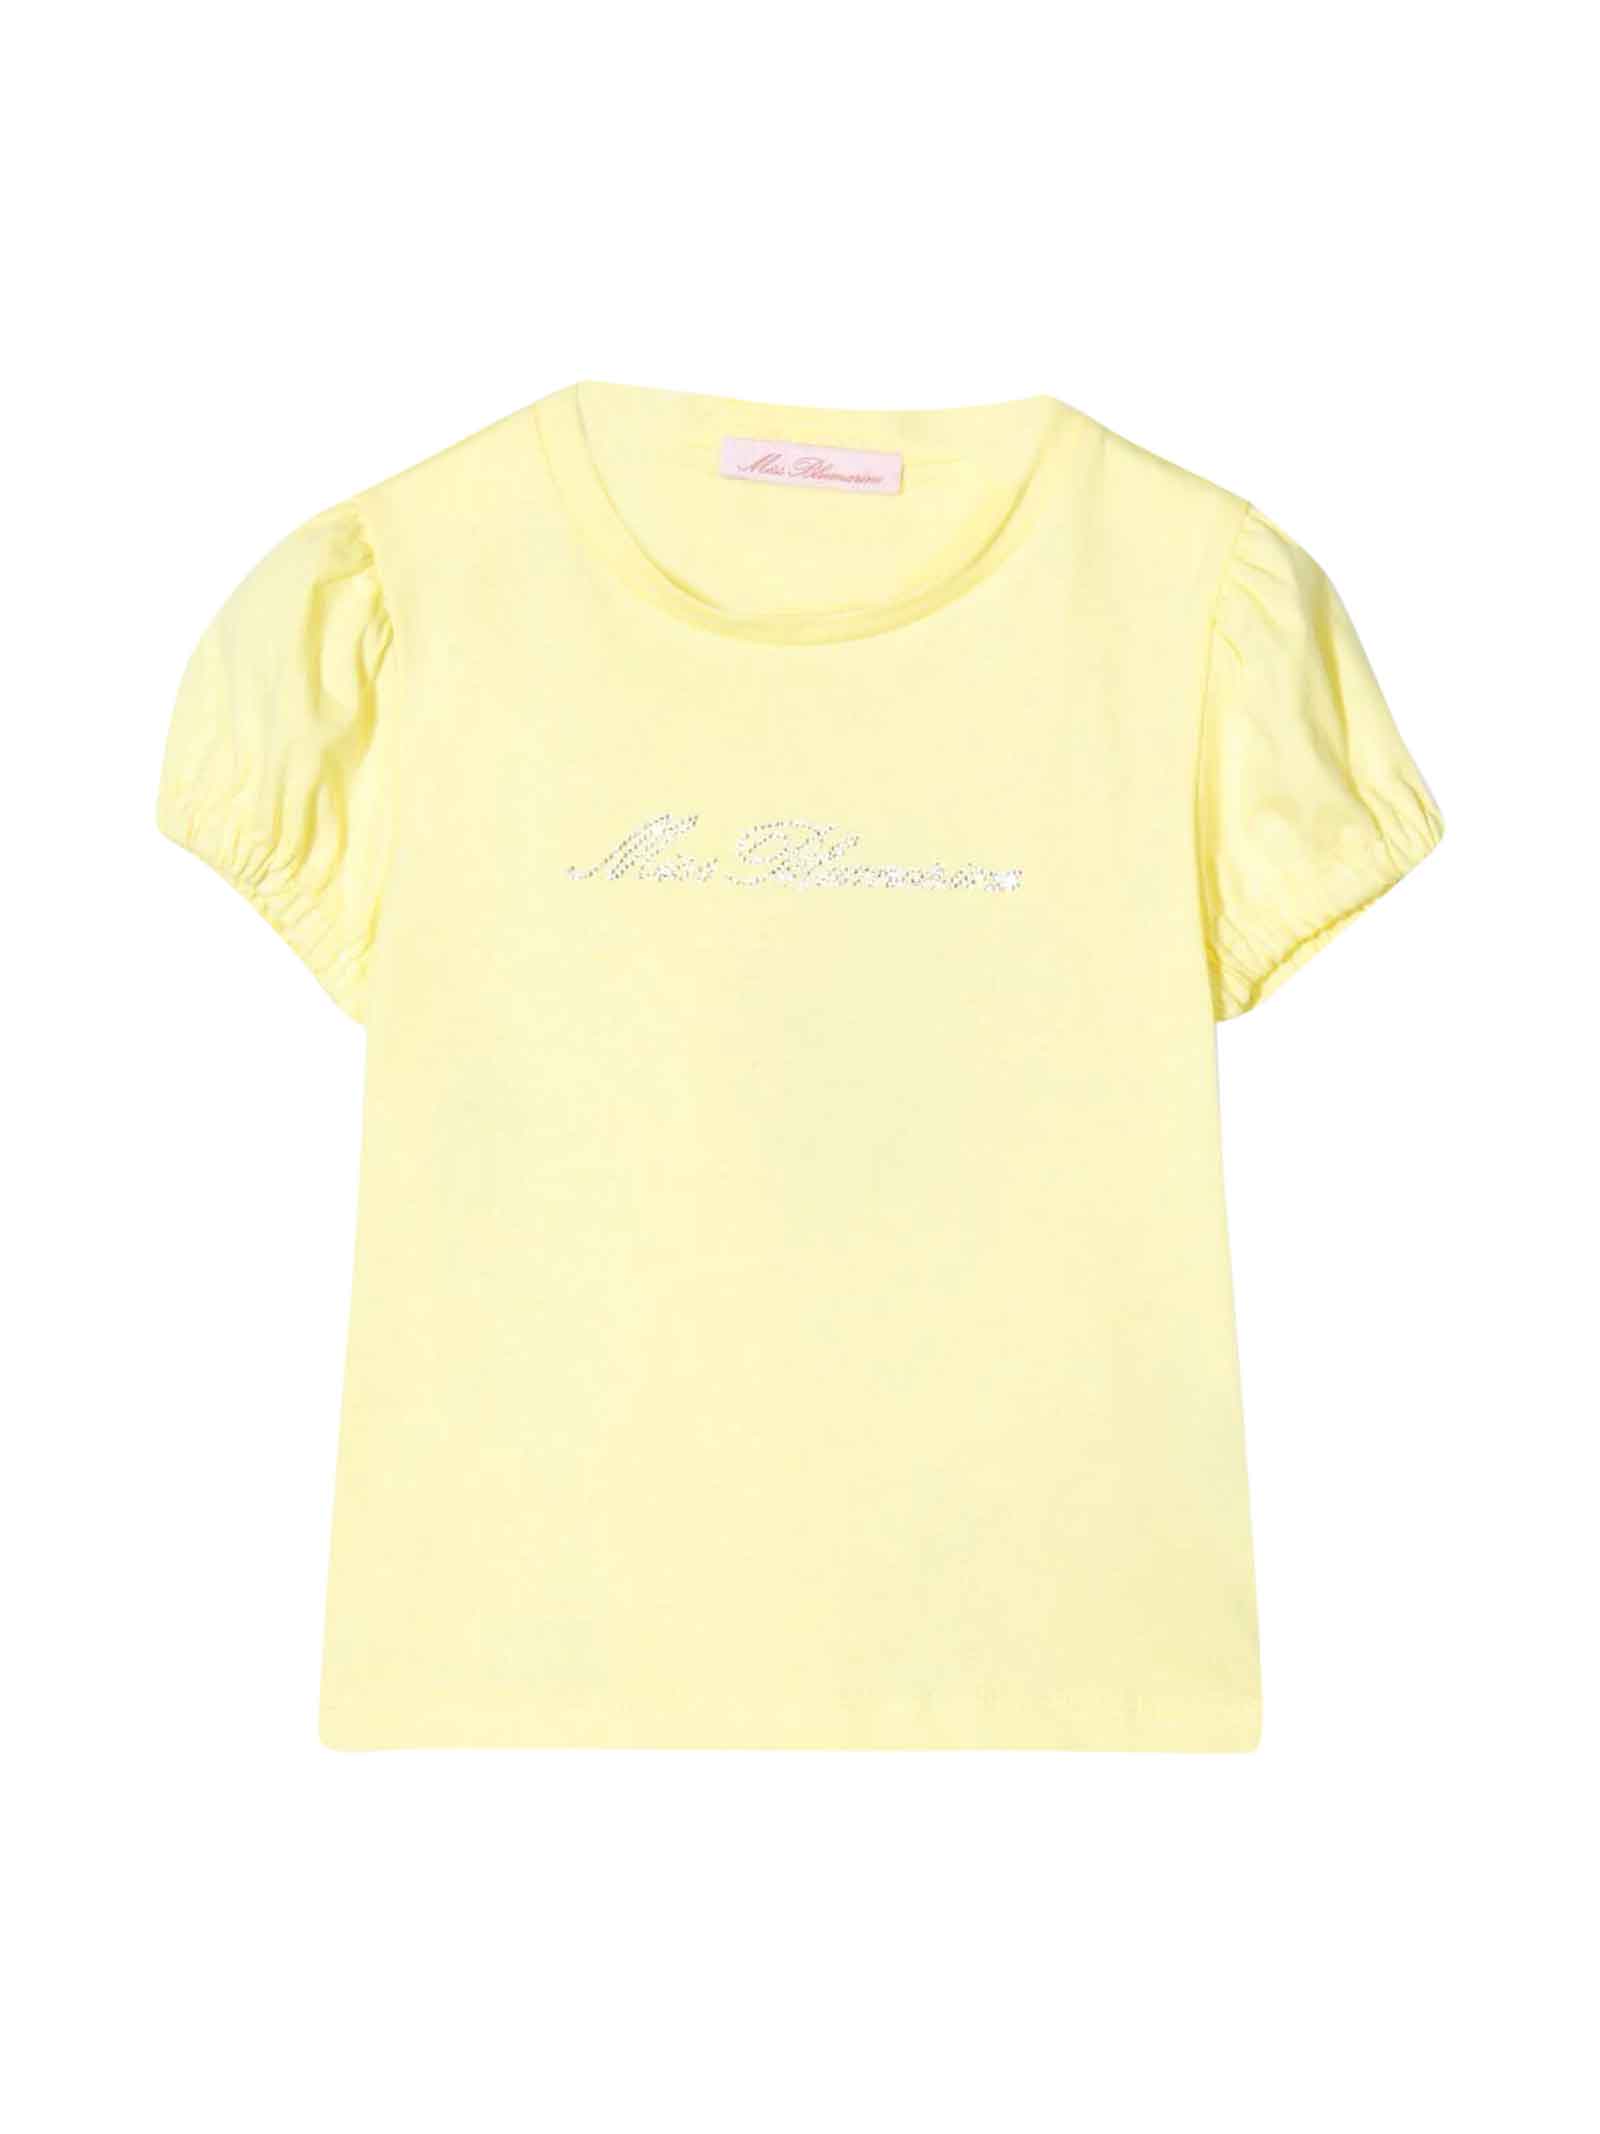 Miss Blumarine Yellow T-shirt